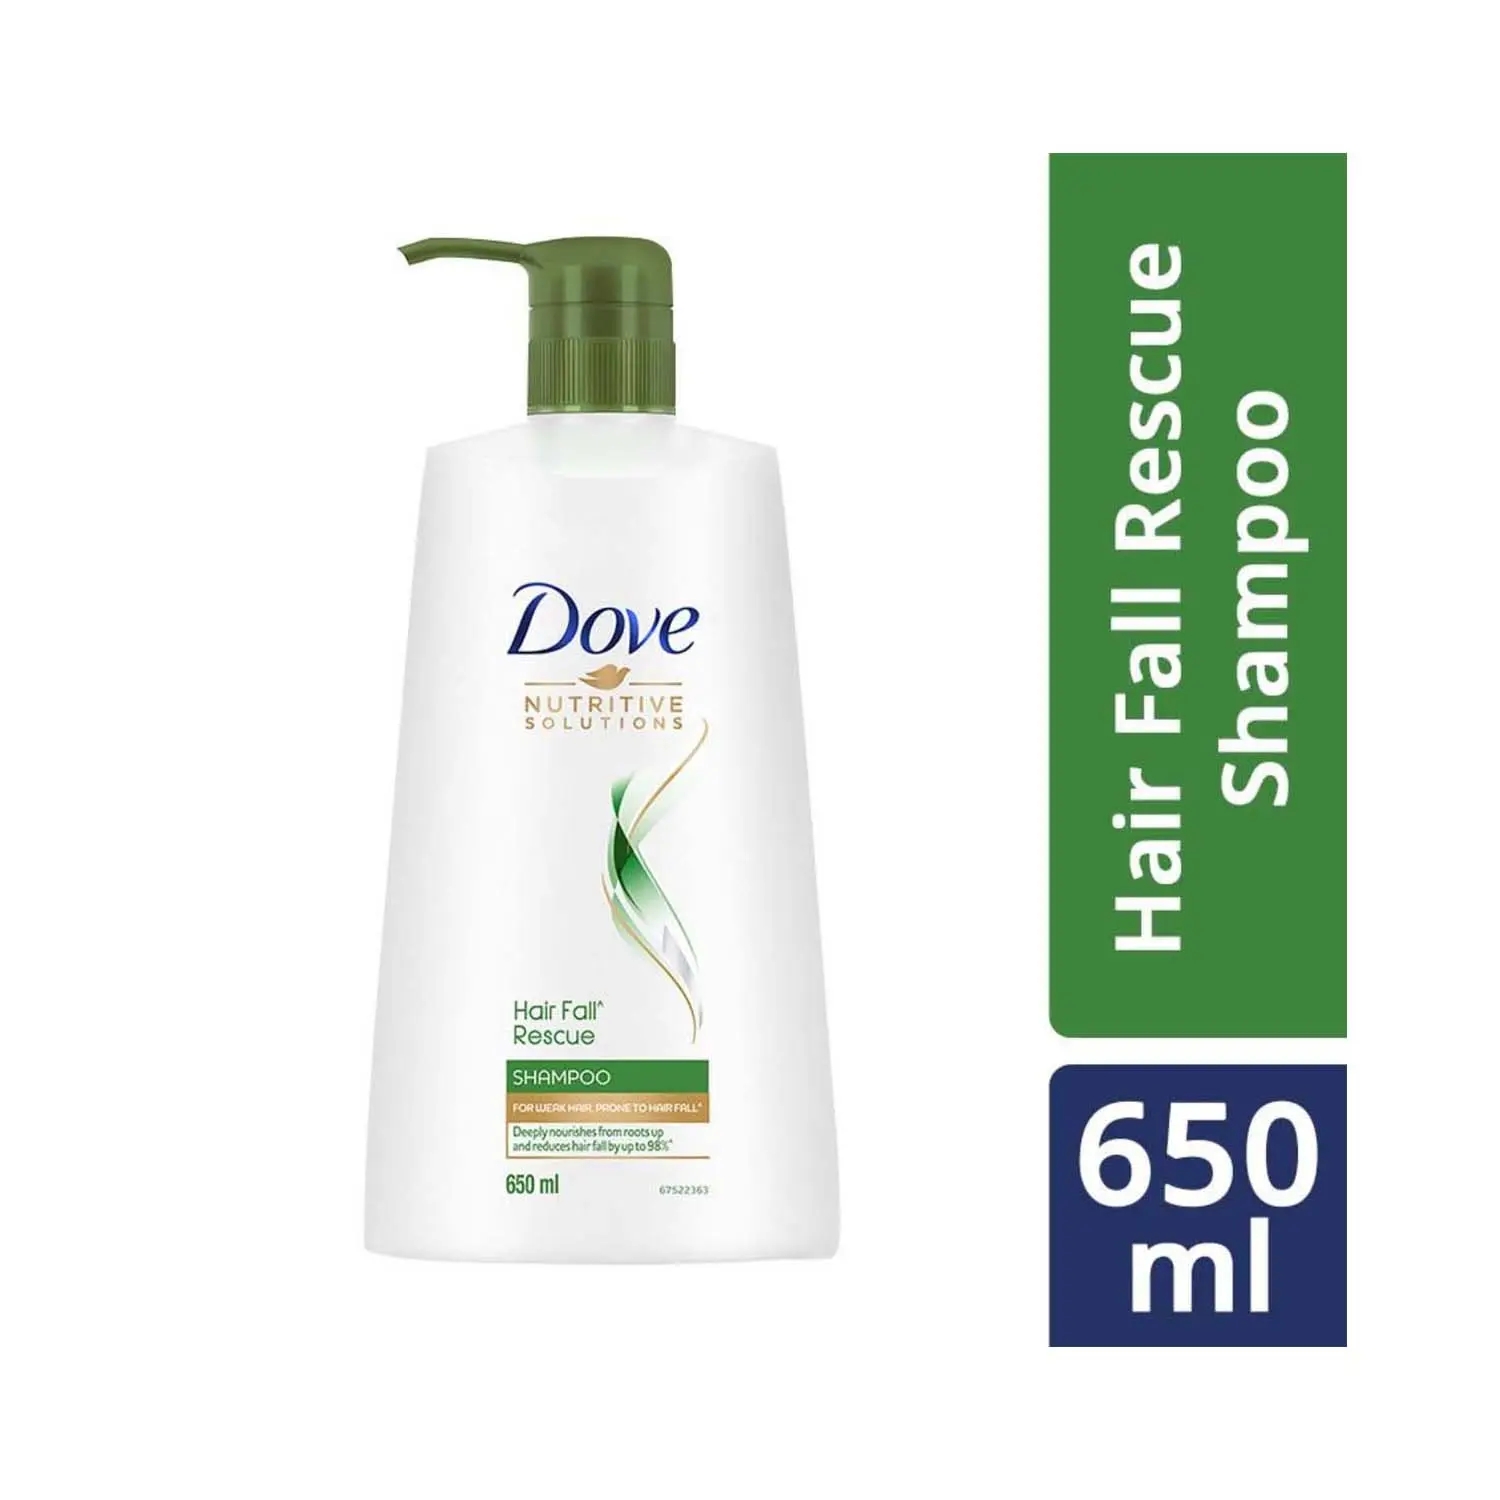 Dove Hair Fall Rescue Hair Shampoo (650ml)